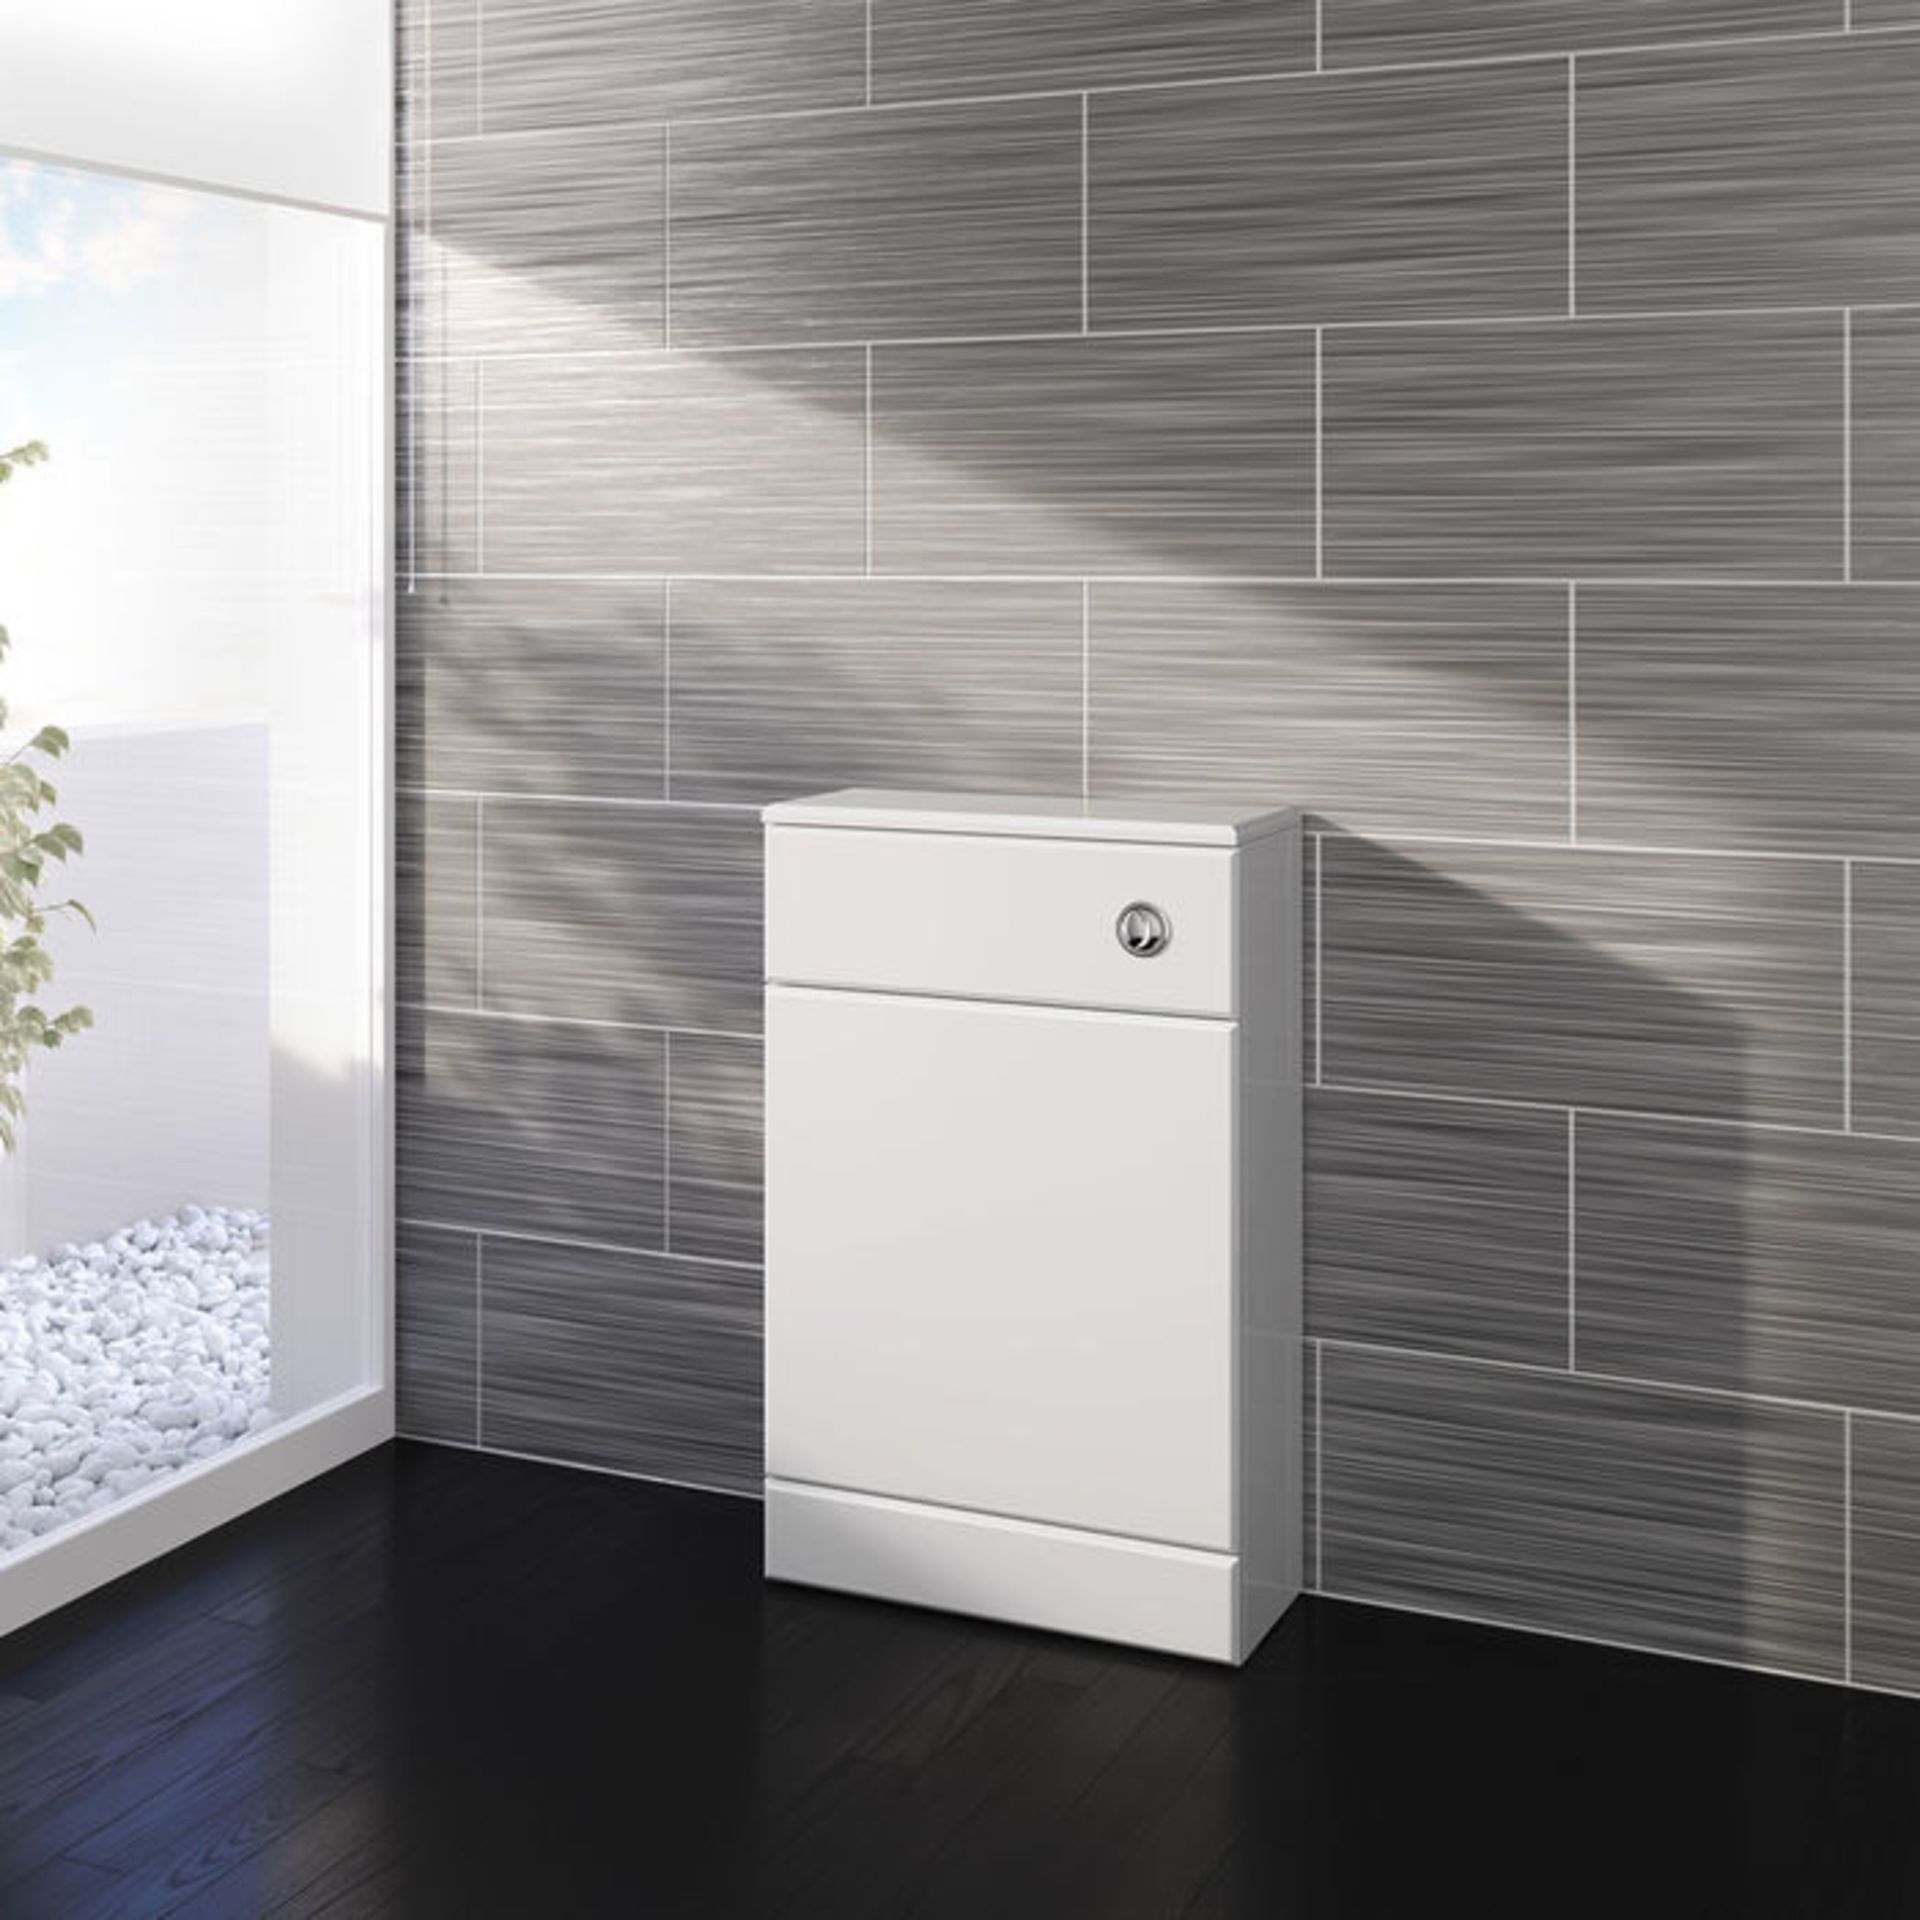 (TA90) 500x200mm Quartz Gloss White Back To Wall Toilet Unit. Pristine gloss white finish Conceals - Image 3 of 5